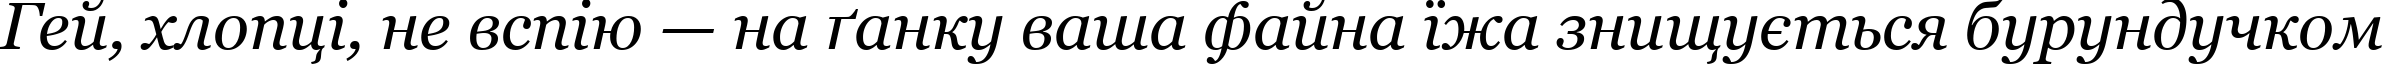 Пример написания шрифтом Georgia Italic текста на украинском